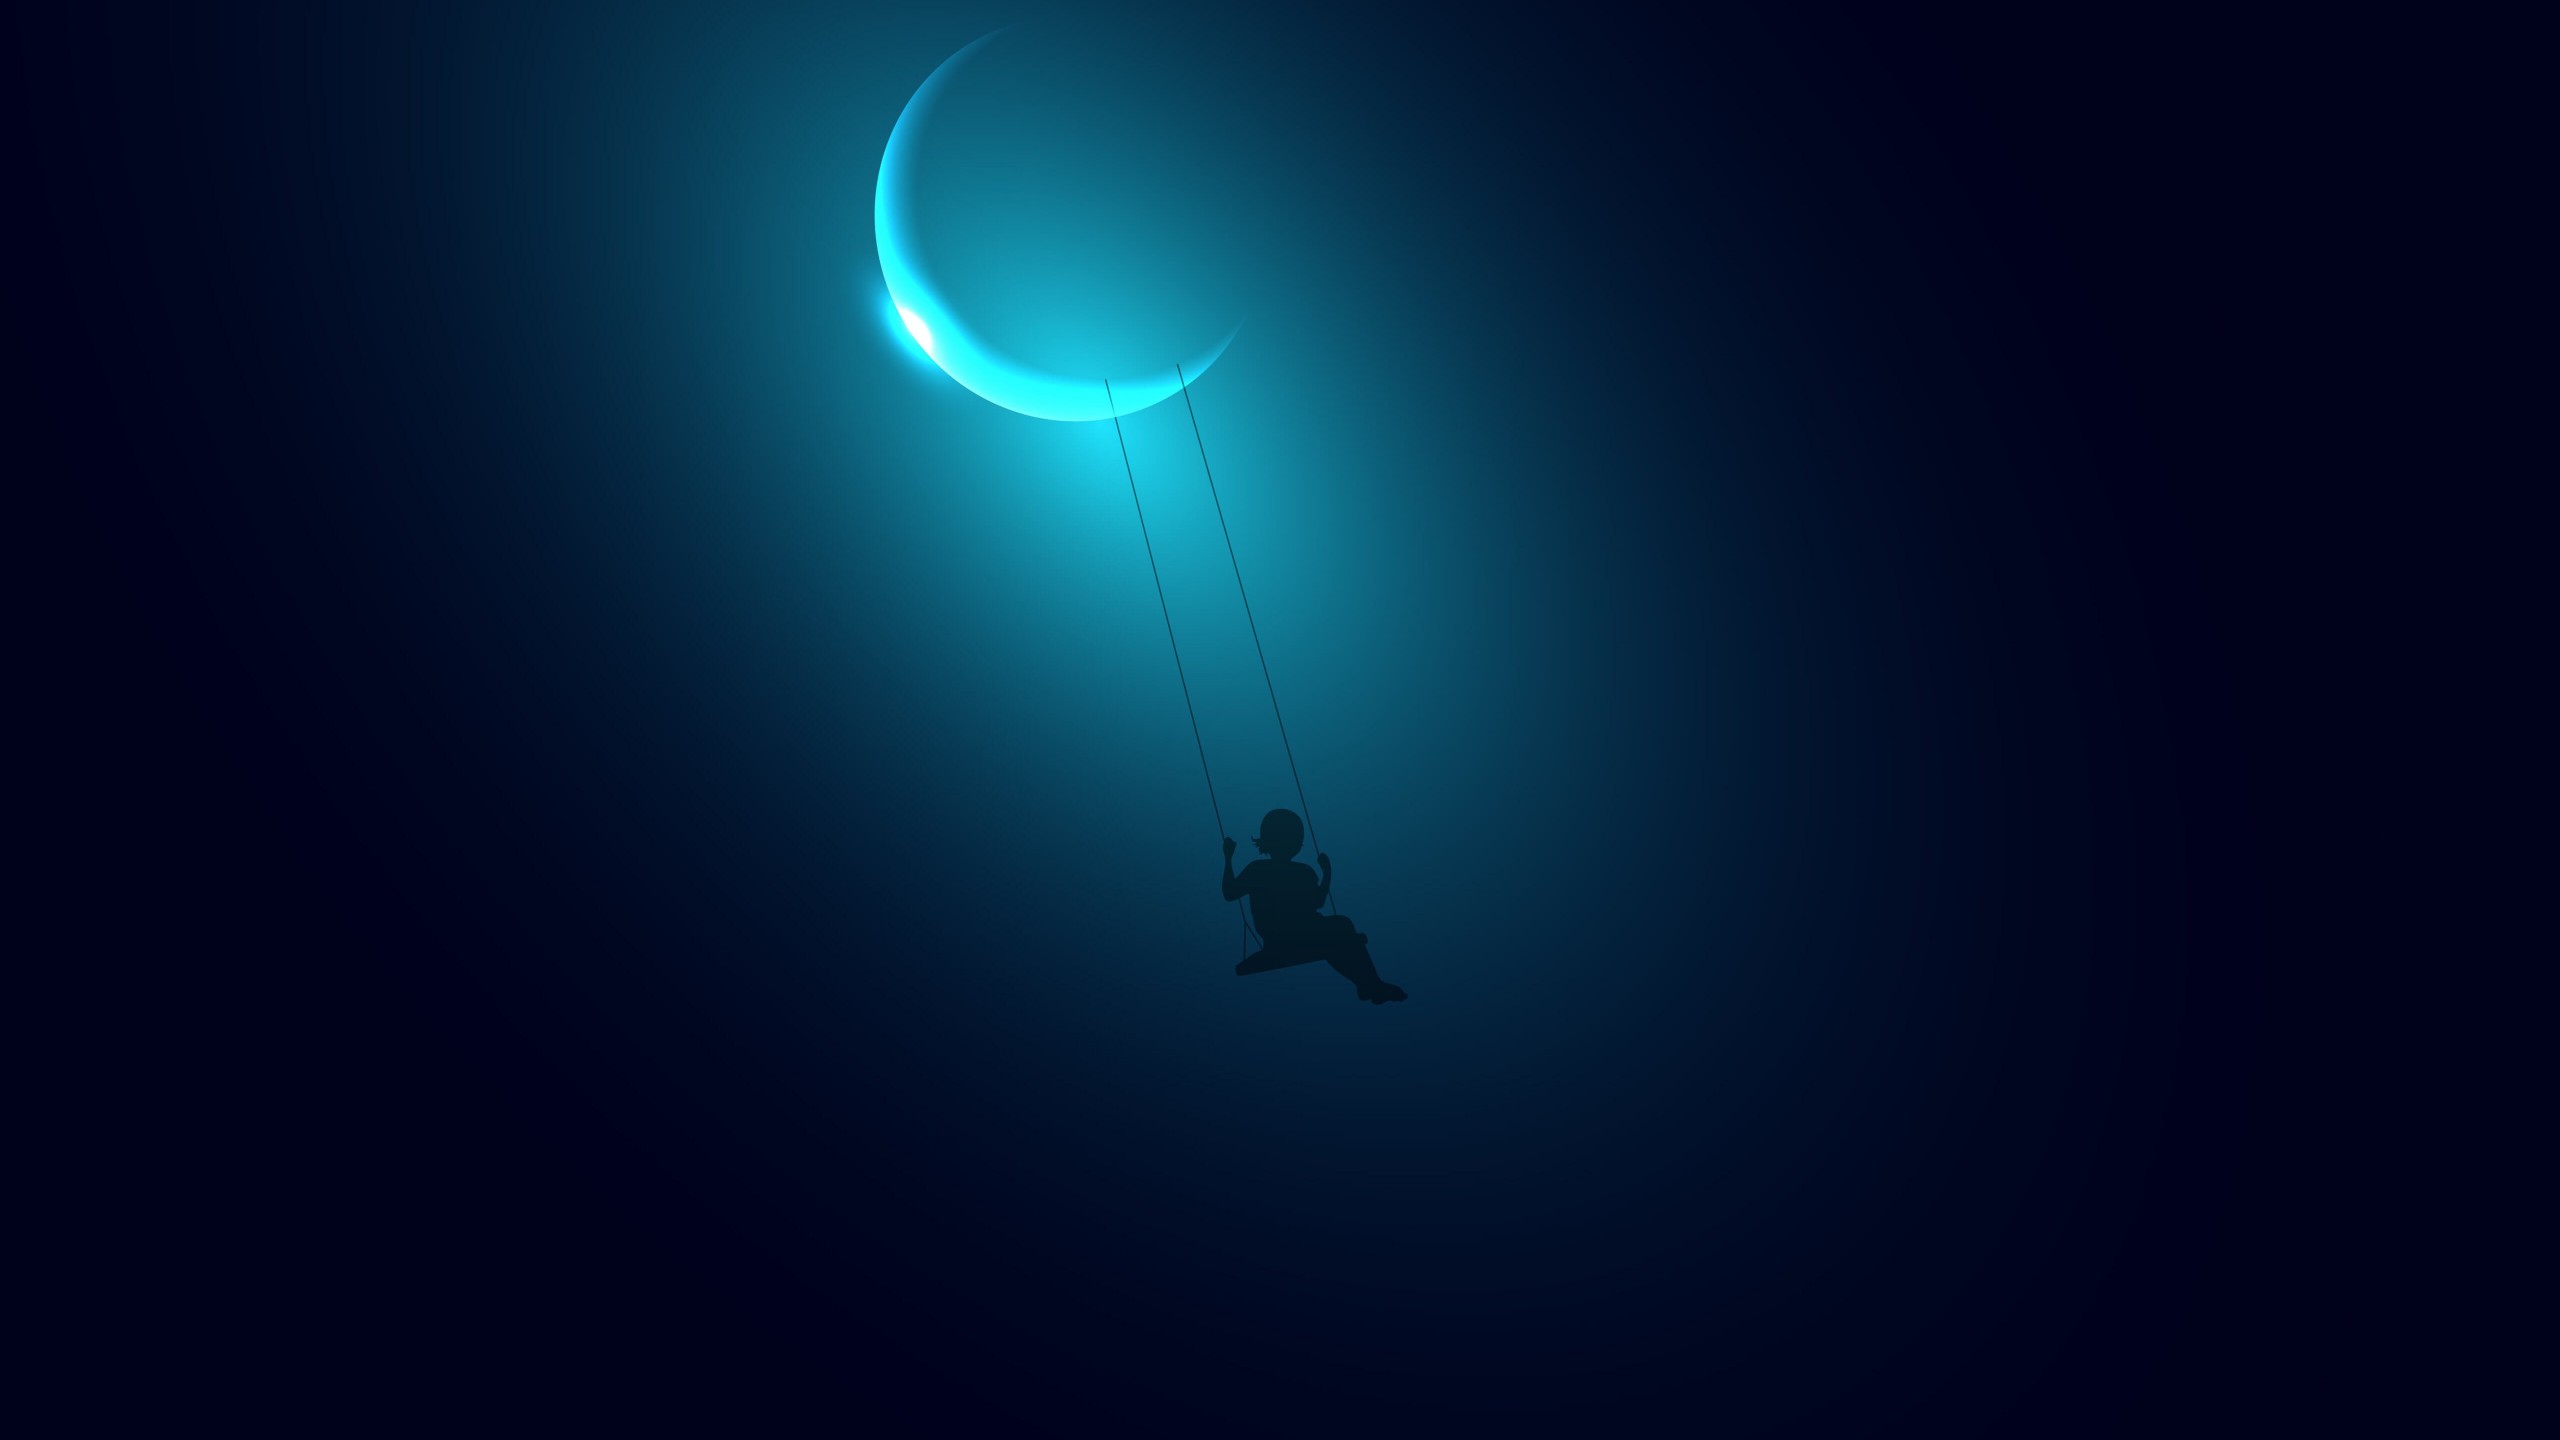 Little Girl Swinging on the Moon Wallpaper for Social Media YouTube Channel Art